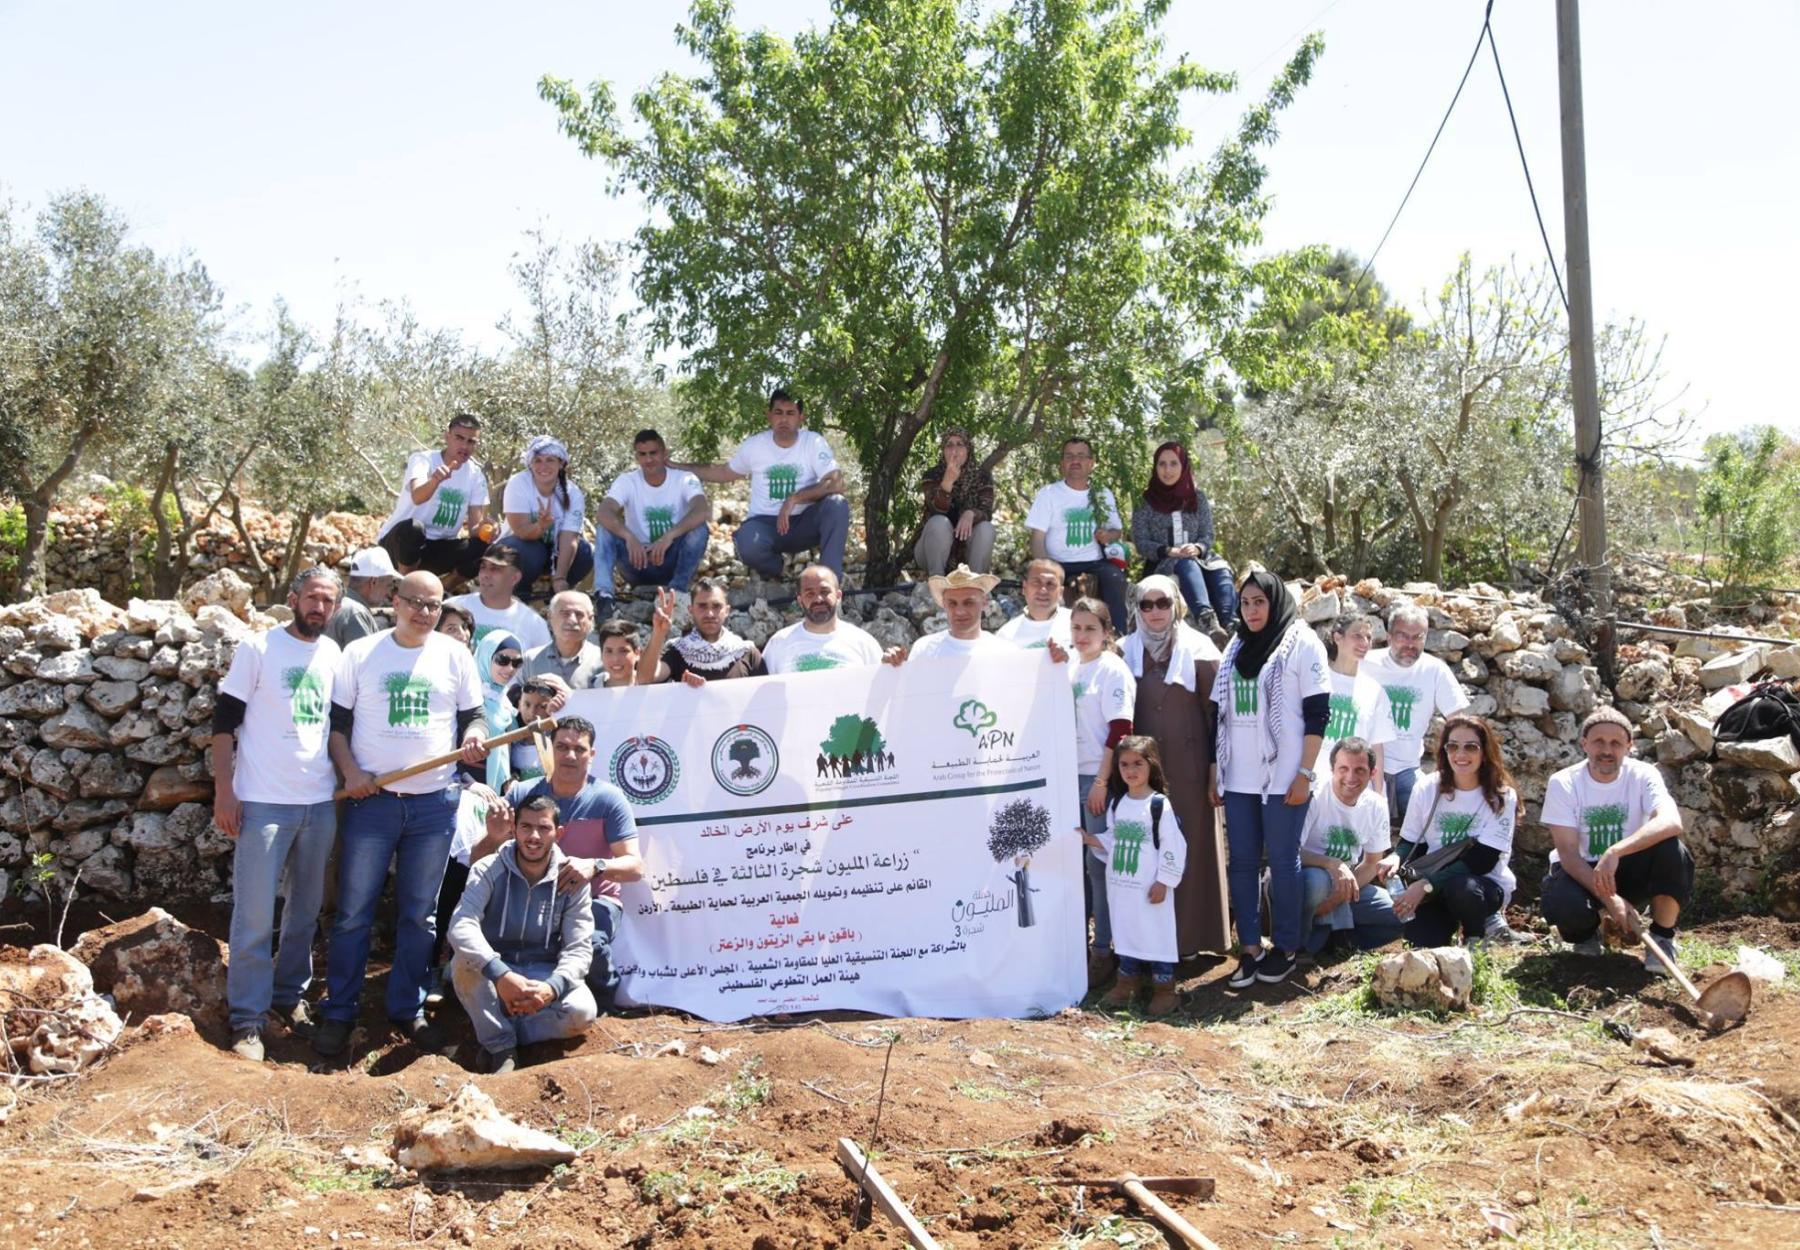 على شرف يوم الأرض الخالد زراعة 700 شجرة تفاح وعنب في قرية شوشحلة المهجرة -بيت لحم - فلسطين